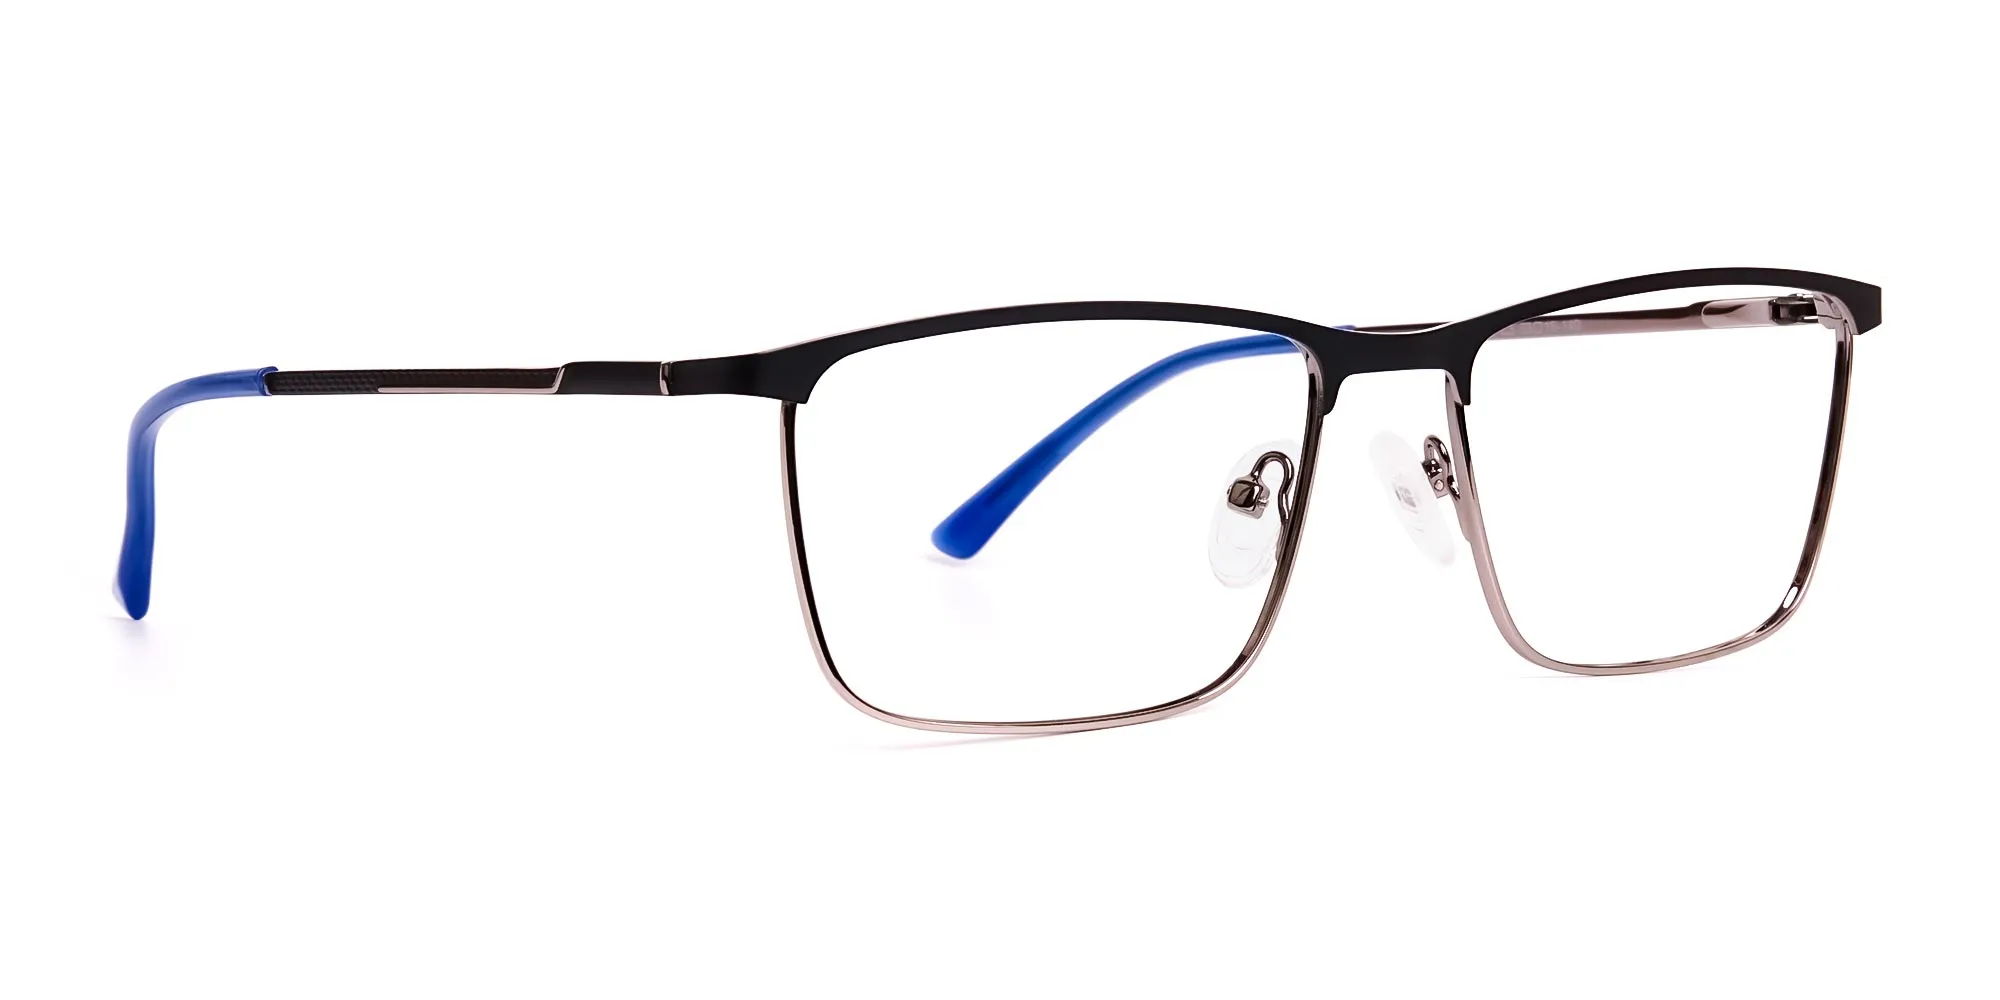 black and blue gunmetal rectangular full rim glasses frames-2